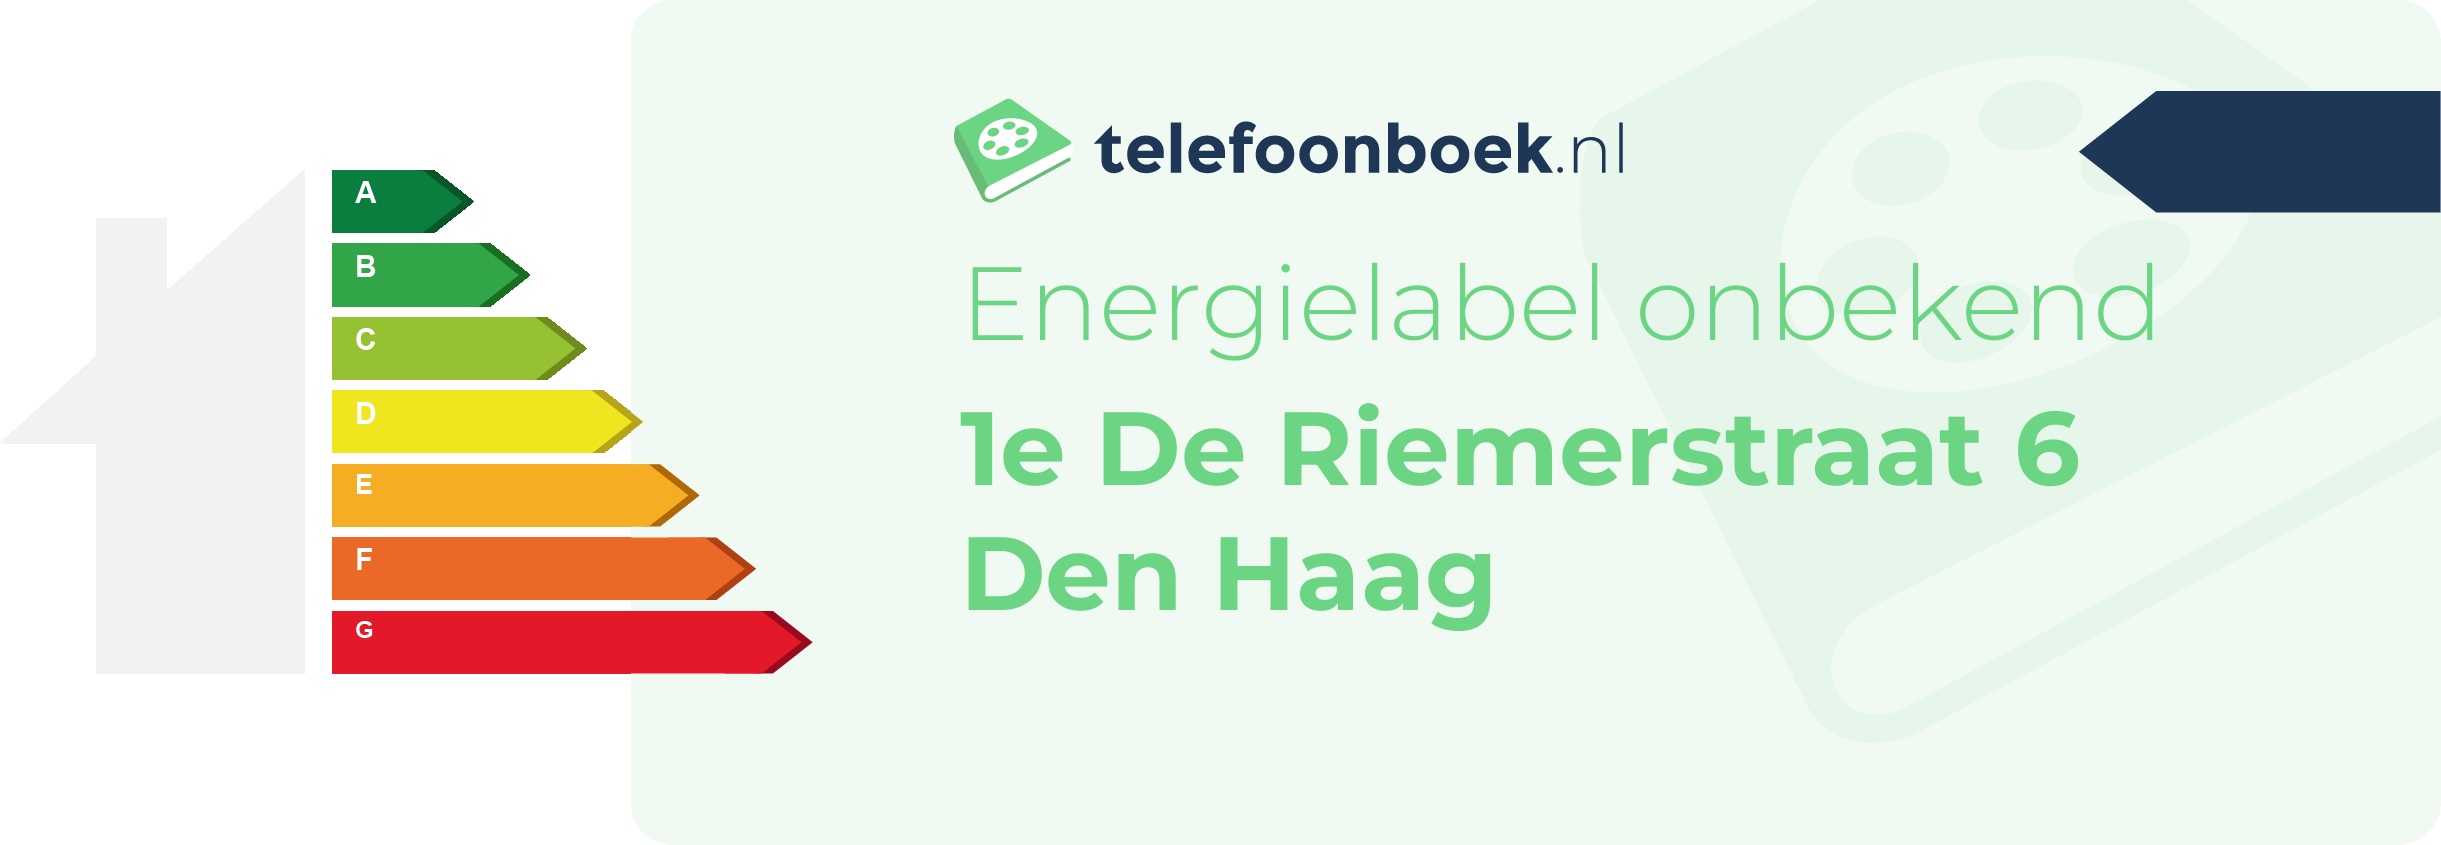 Energielabel 1e De Riemerstraat 6 Den Haag